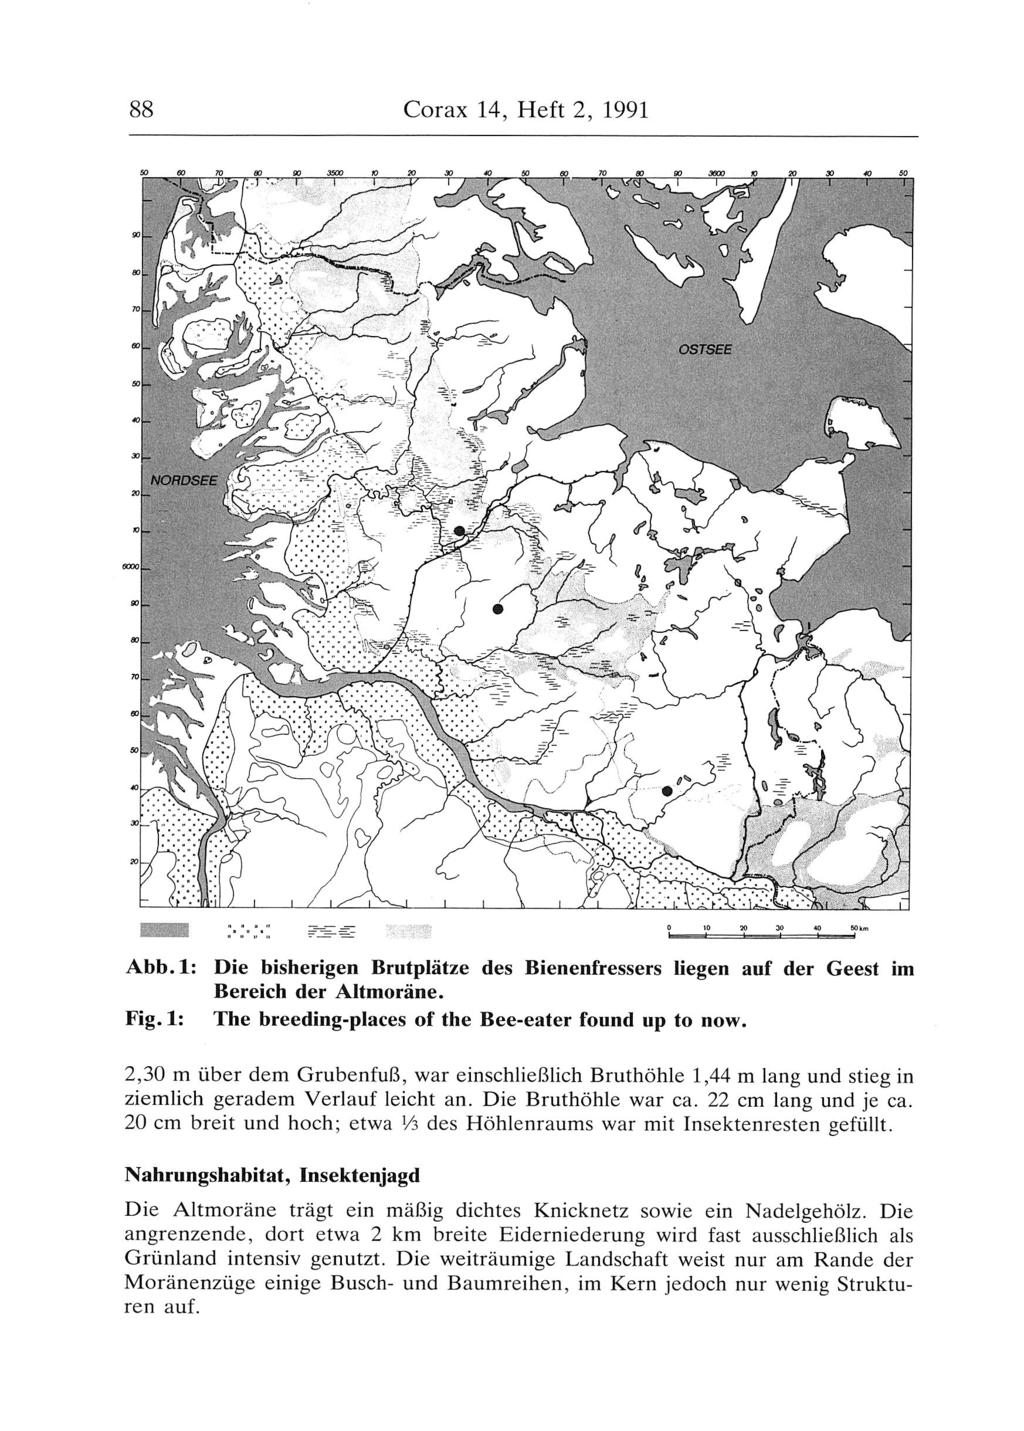 88 Corax 14, Heft 2, 1991 Abb.1: Die bisherigen Brutplätze des Bienenfressers liegen auf der Geest im Bereich der Altmoräne. Fig.1: The breeding-places of the Bee-eater found up to now.